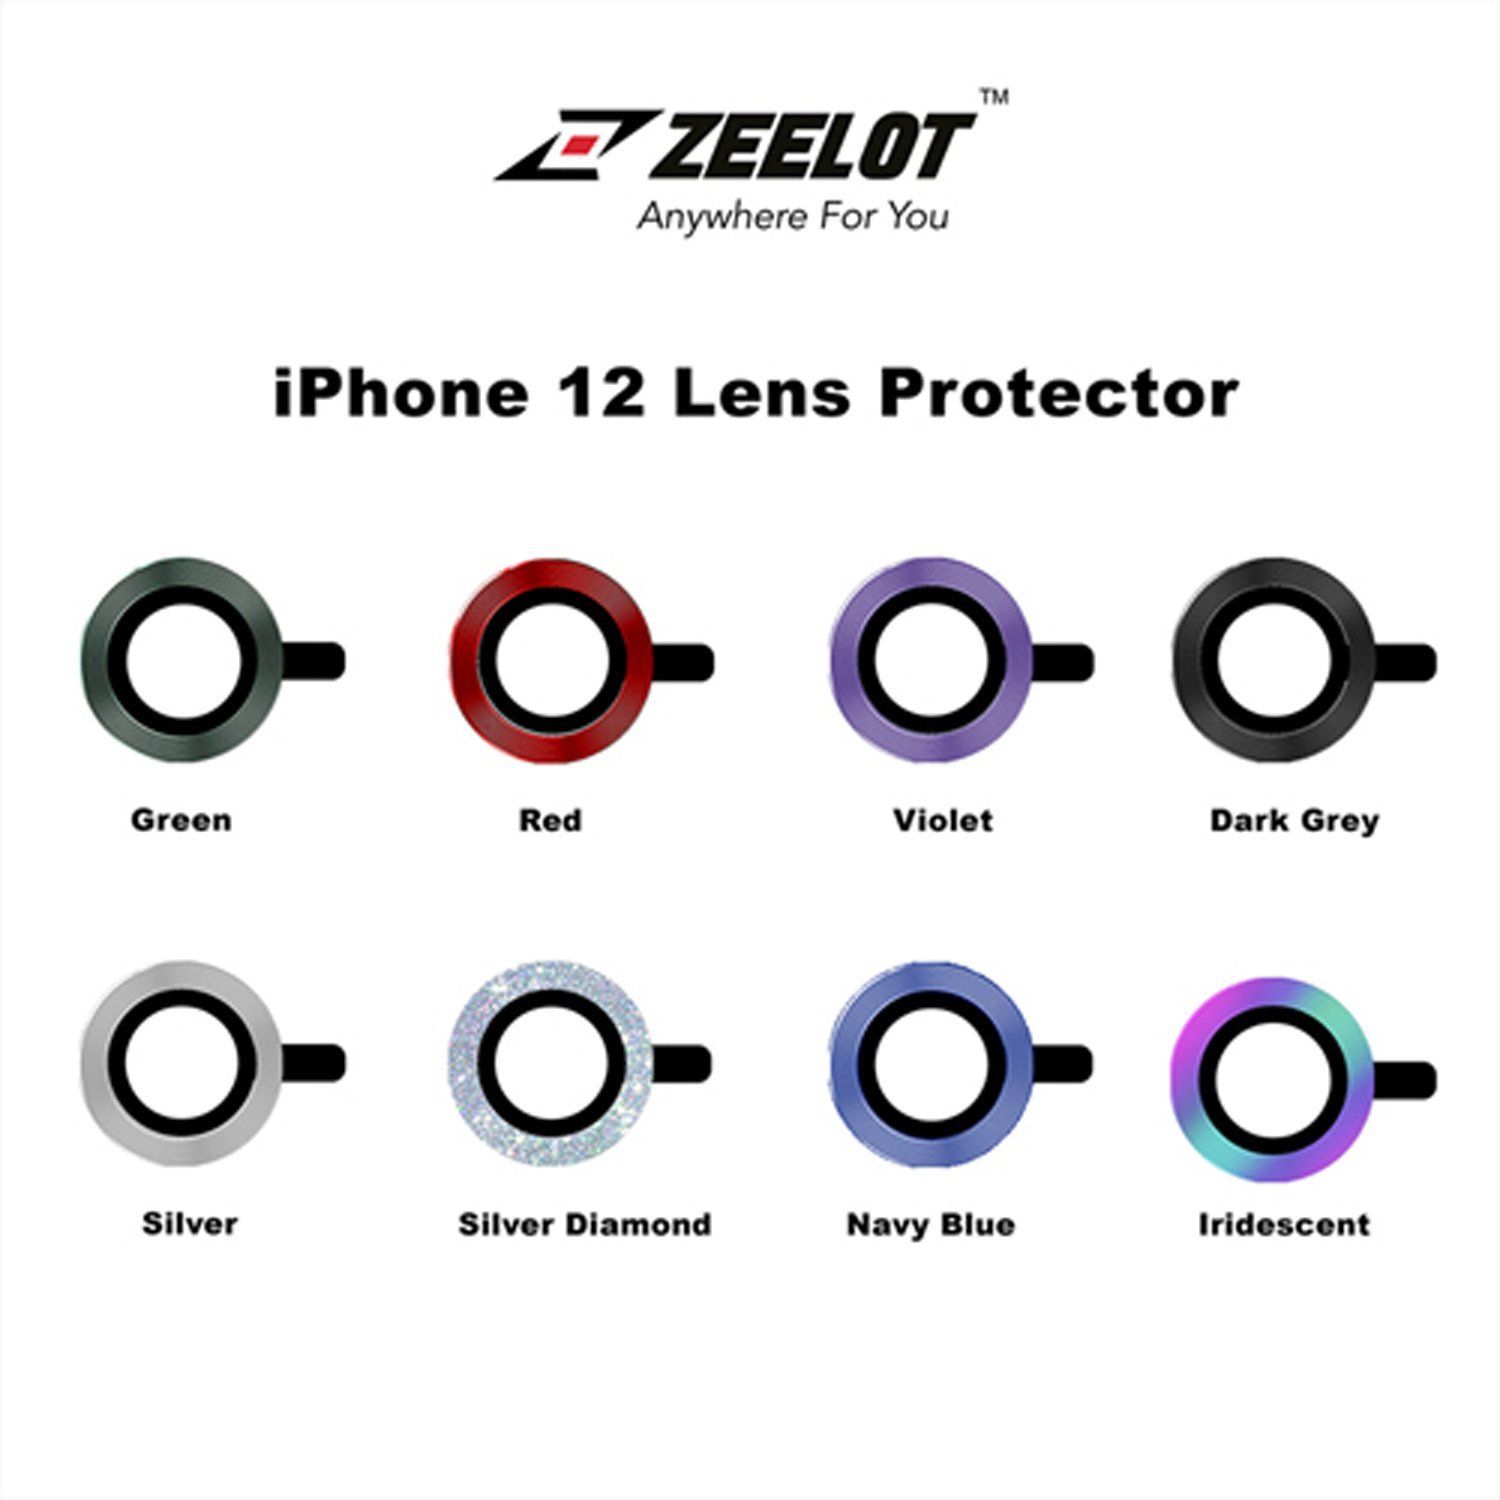 ZEELOT Titanium Steel with Lens Protector for iPhone 12 6.1"/12 Mini 5.4"/iPhone 11 6.1" (Two Cameras), Green Default ZEELOT 